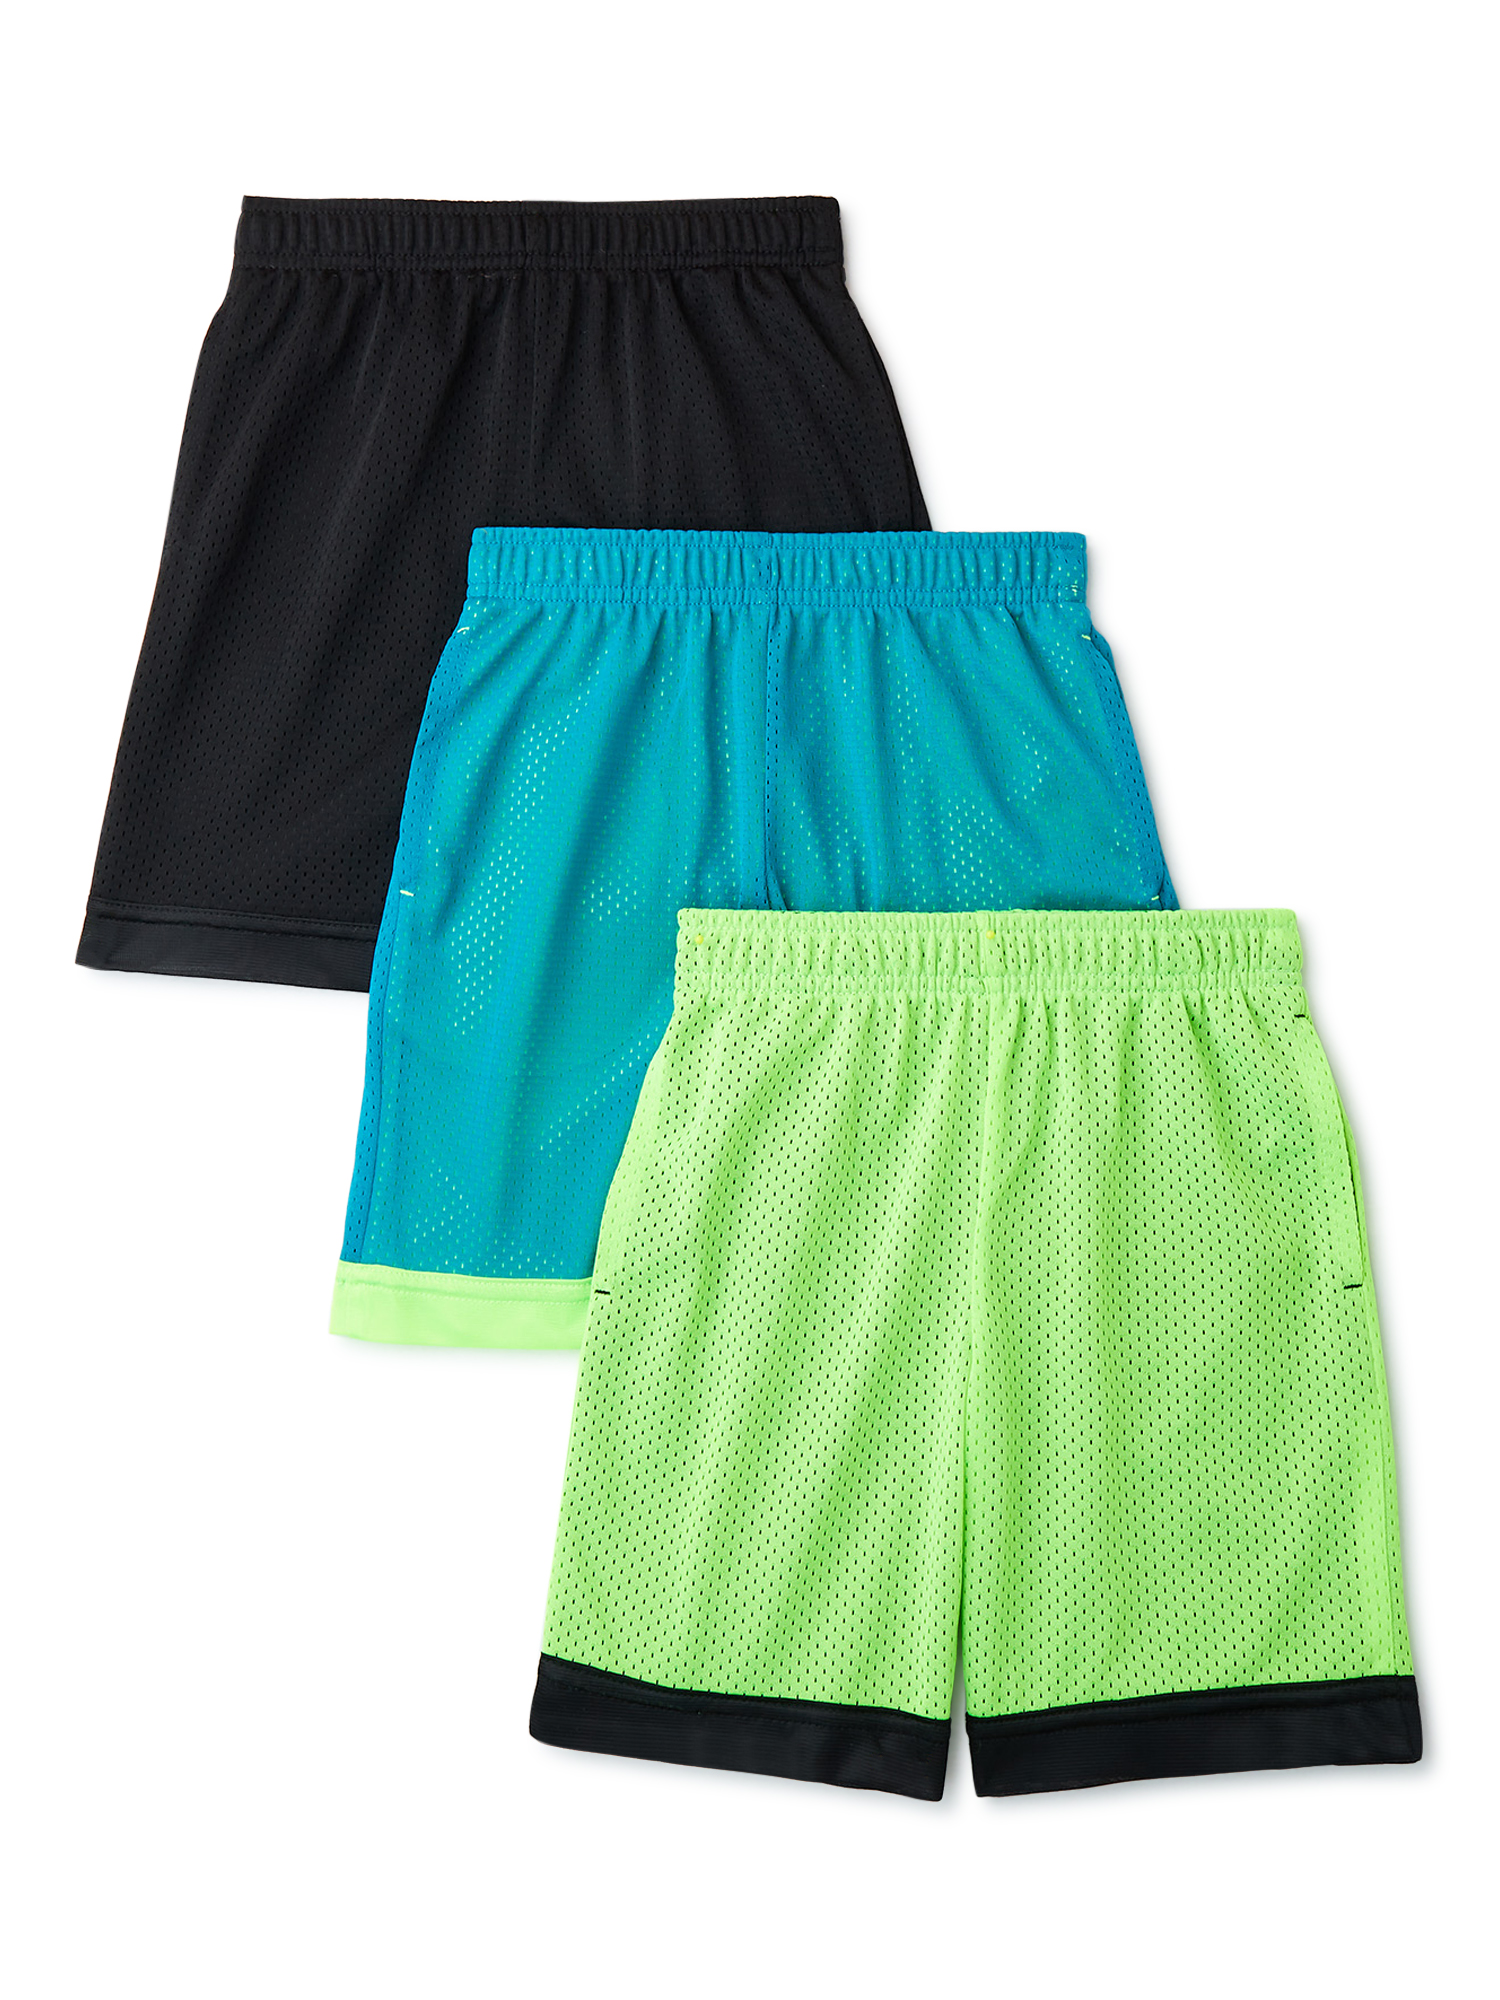 Athletic Works Boys Mesh Shorts, 3-Pack, Sizes 4-18 & Husky - image 1 of 4